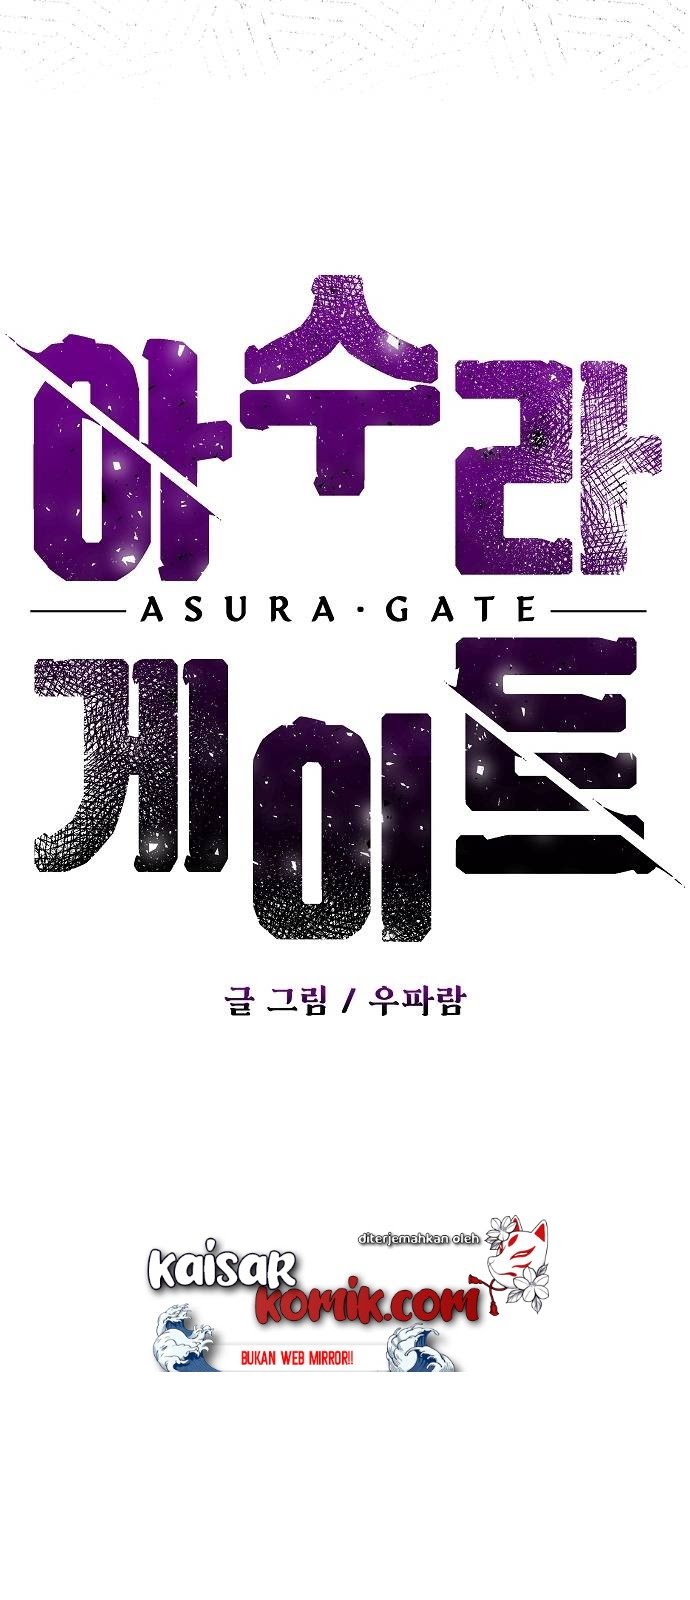 Asura Gate Chapter 01